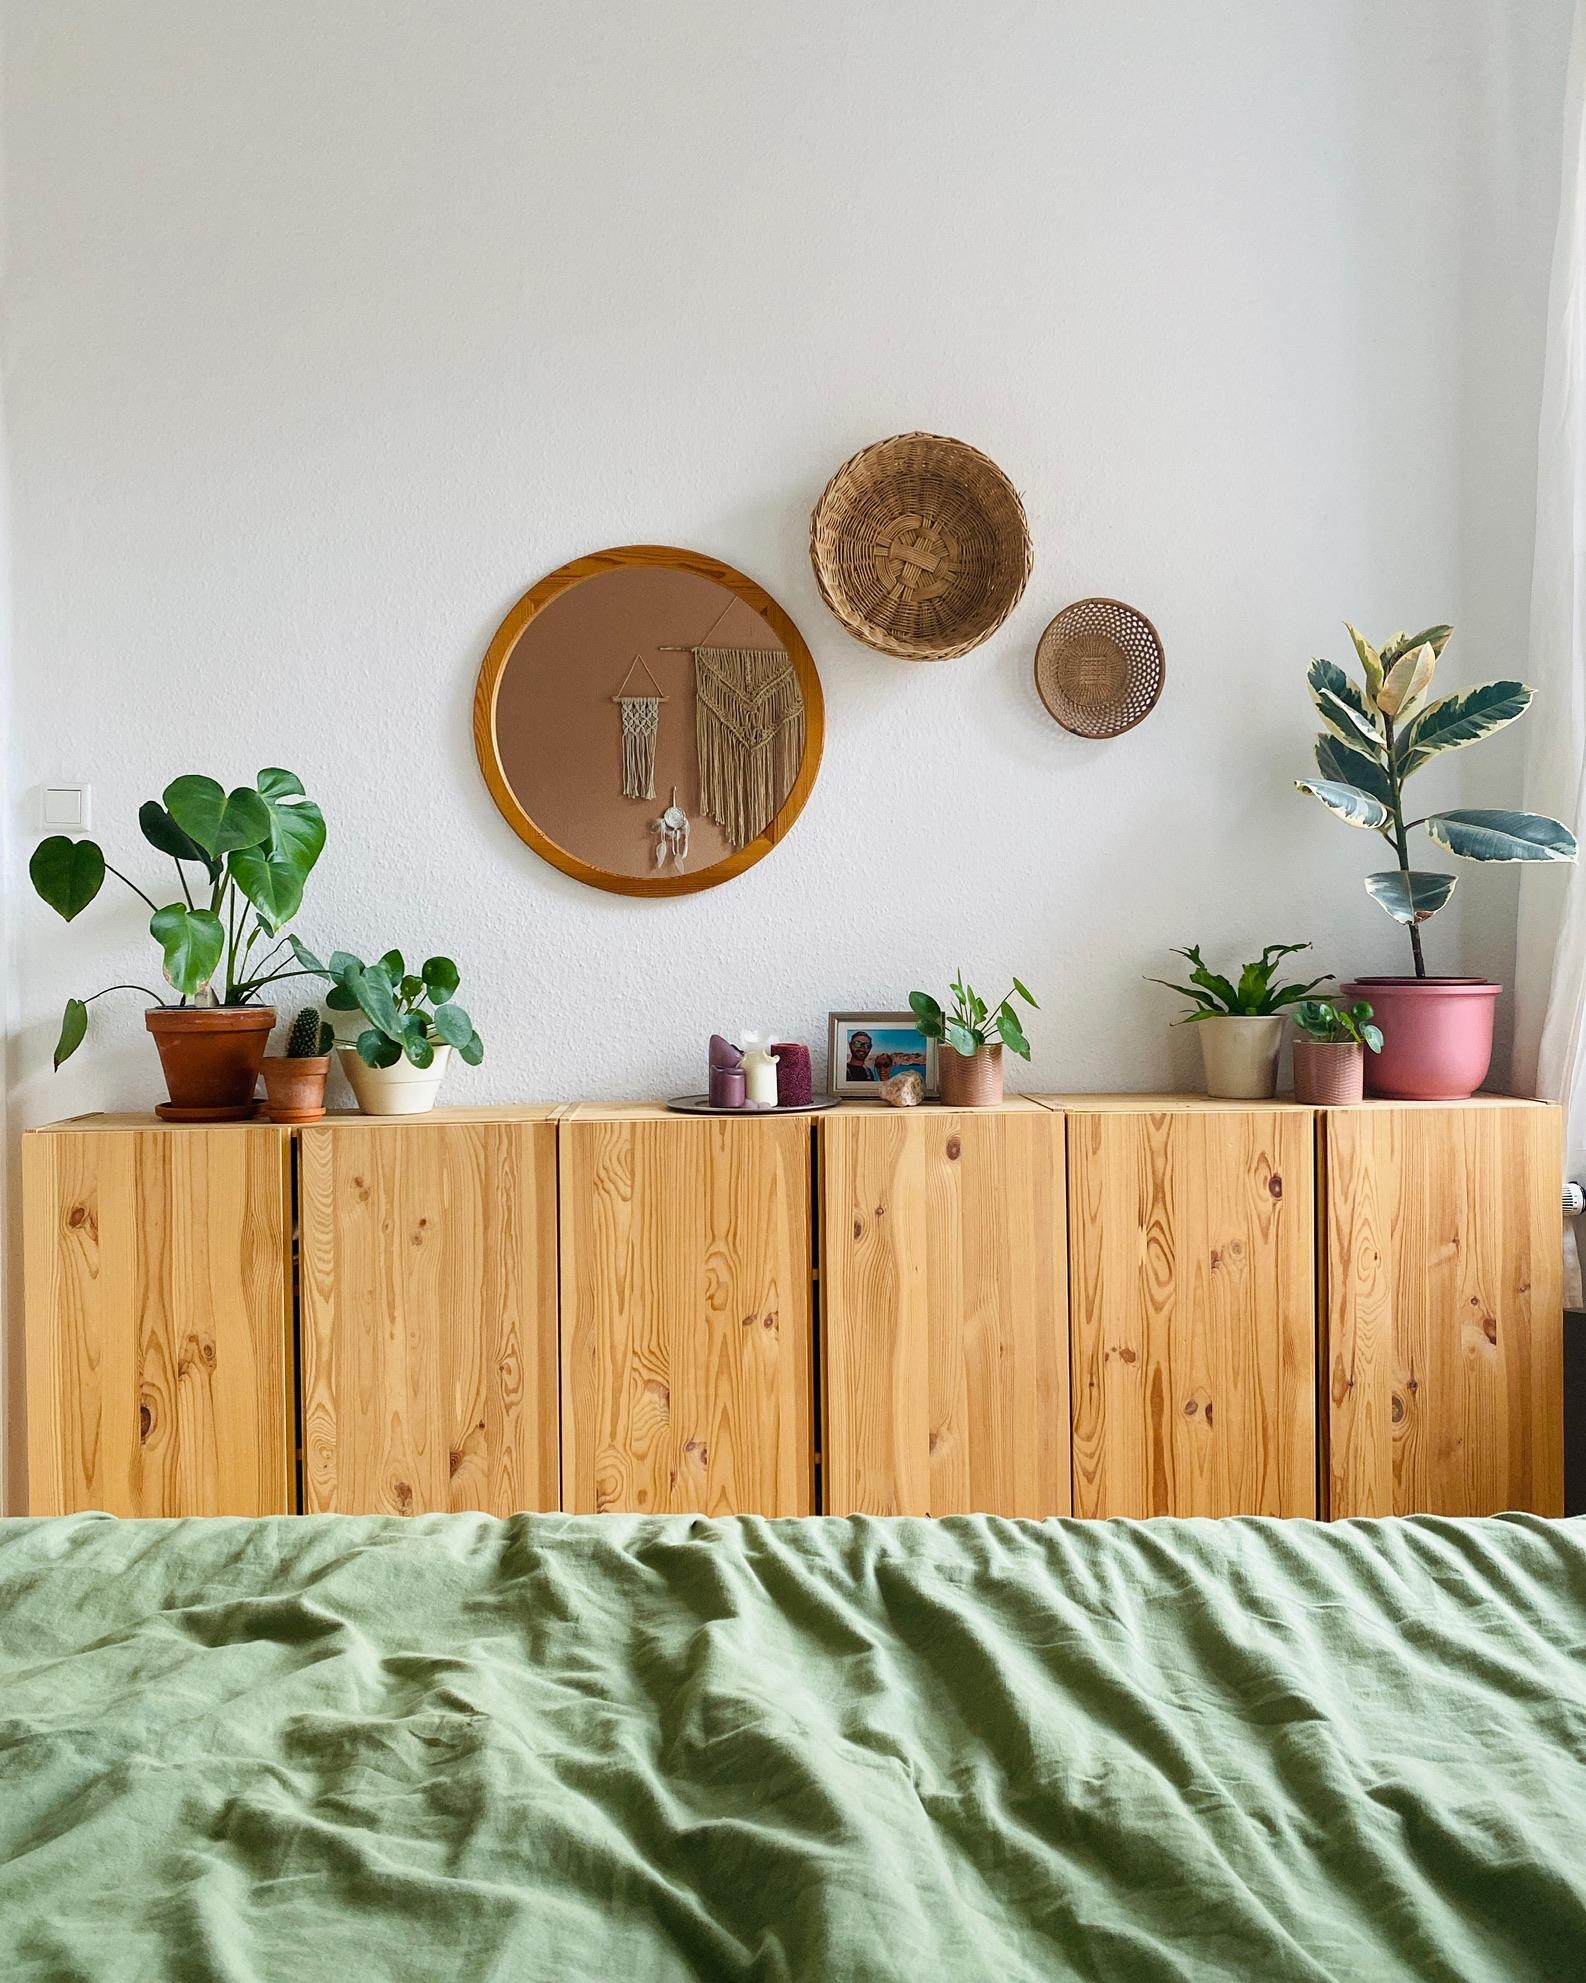 Blick auf meine Lieblingsschlafzimmerwand 🪴 #ivar #schlafzimmer #wandgestaltung #plants #bett #boho #cozy #kommode 